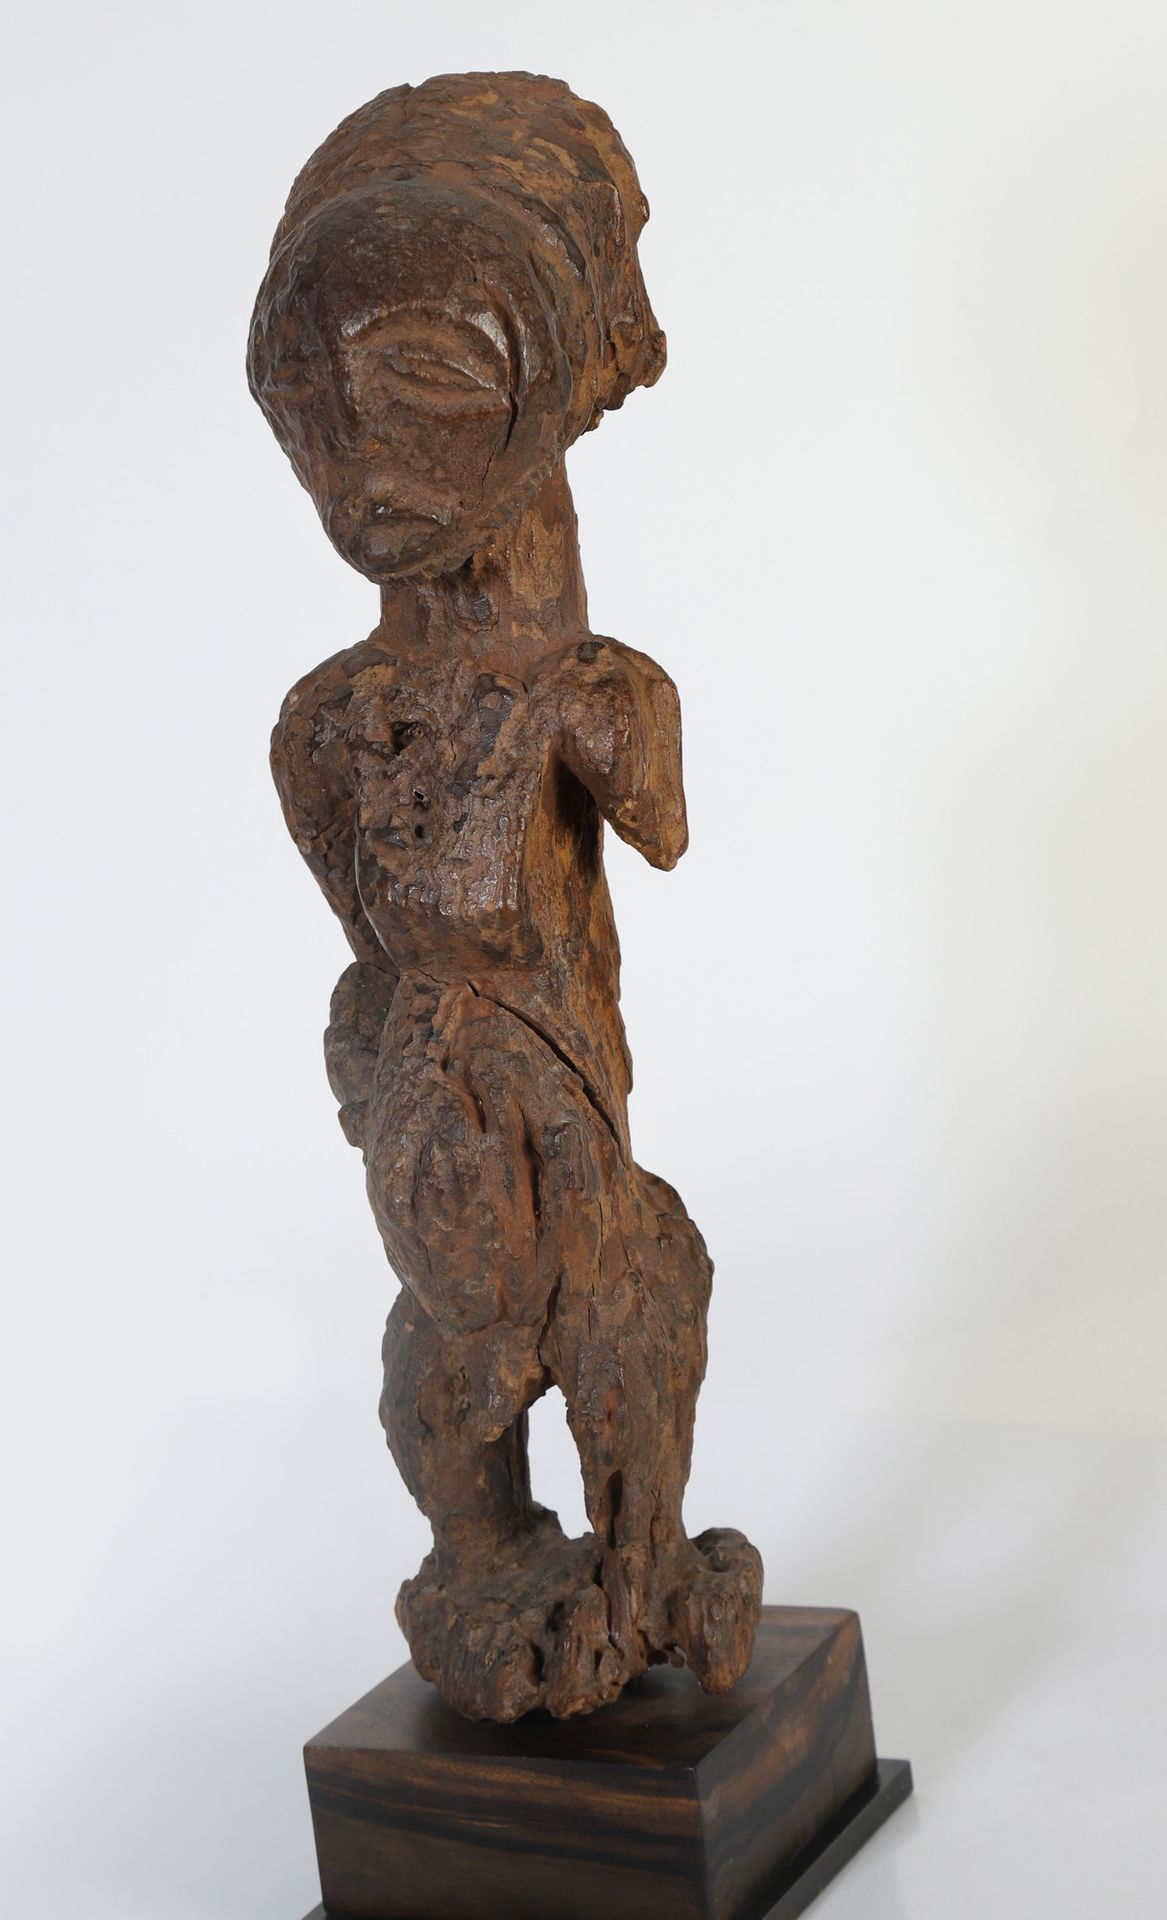 Null 拟人化的雕像，有一个站立的男性形象。侵蚀严重的木材。卢巴，刚果民主共和国

37x11x7cm